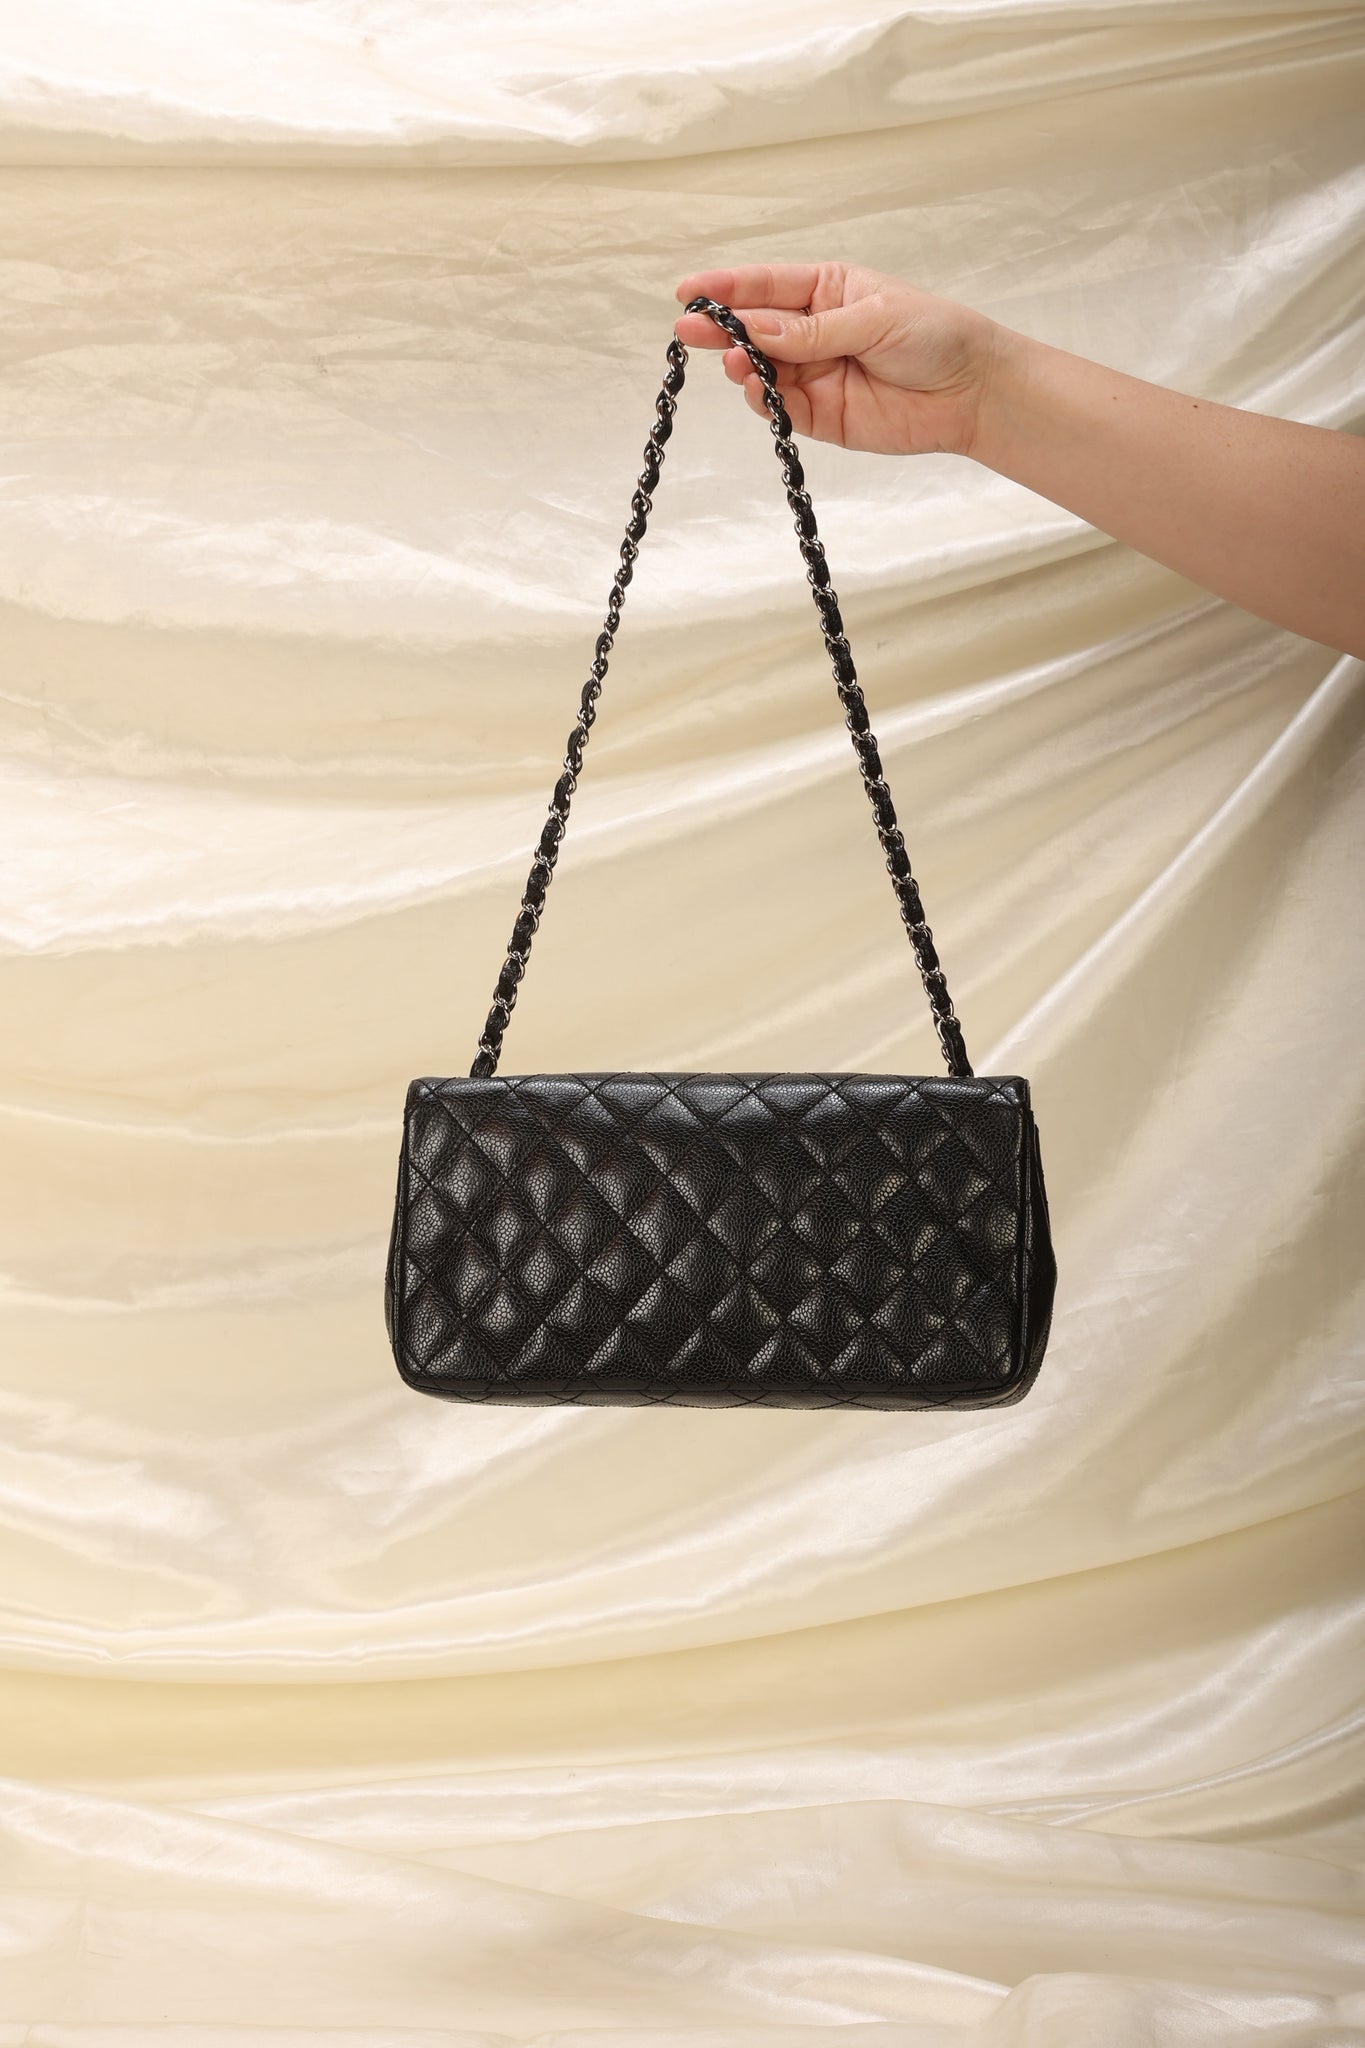 Chanel Black Caviar Skin East West Shoulder Bag 10224580 Auction